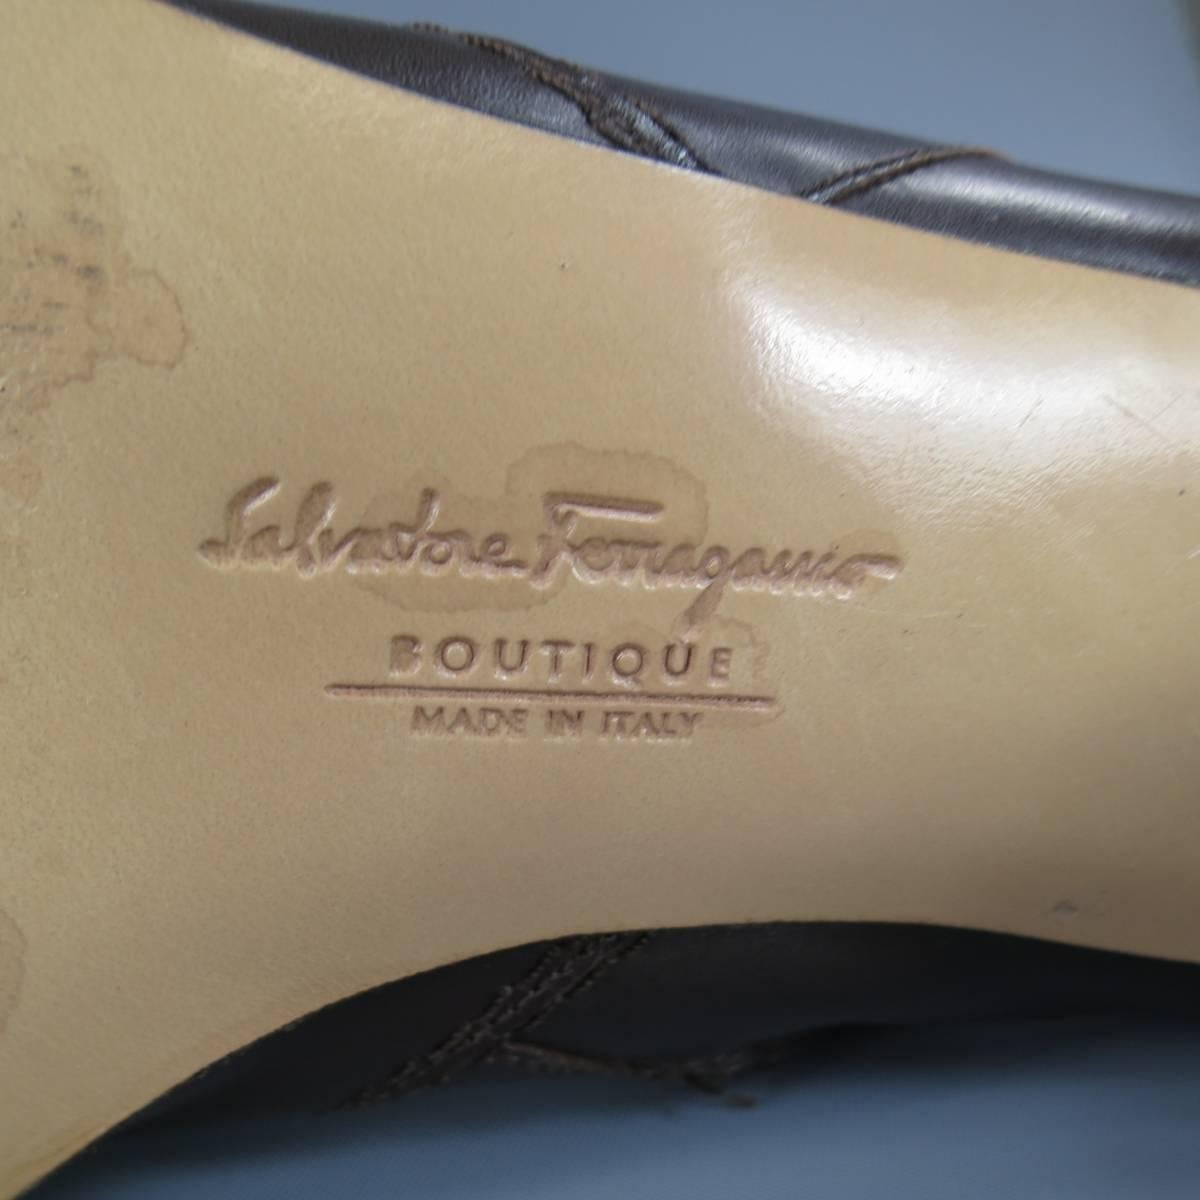 SALVATORE FERRAGAMO Boutique Size 7.5 Brown Leather Gold Gancio CalfBoots 2